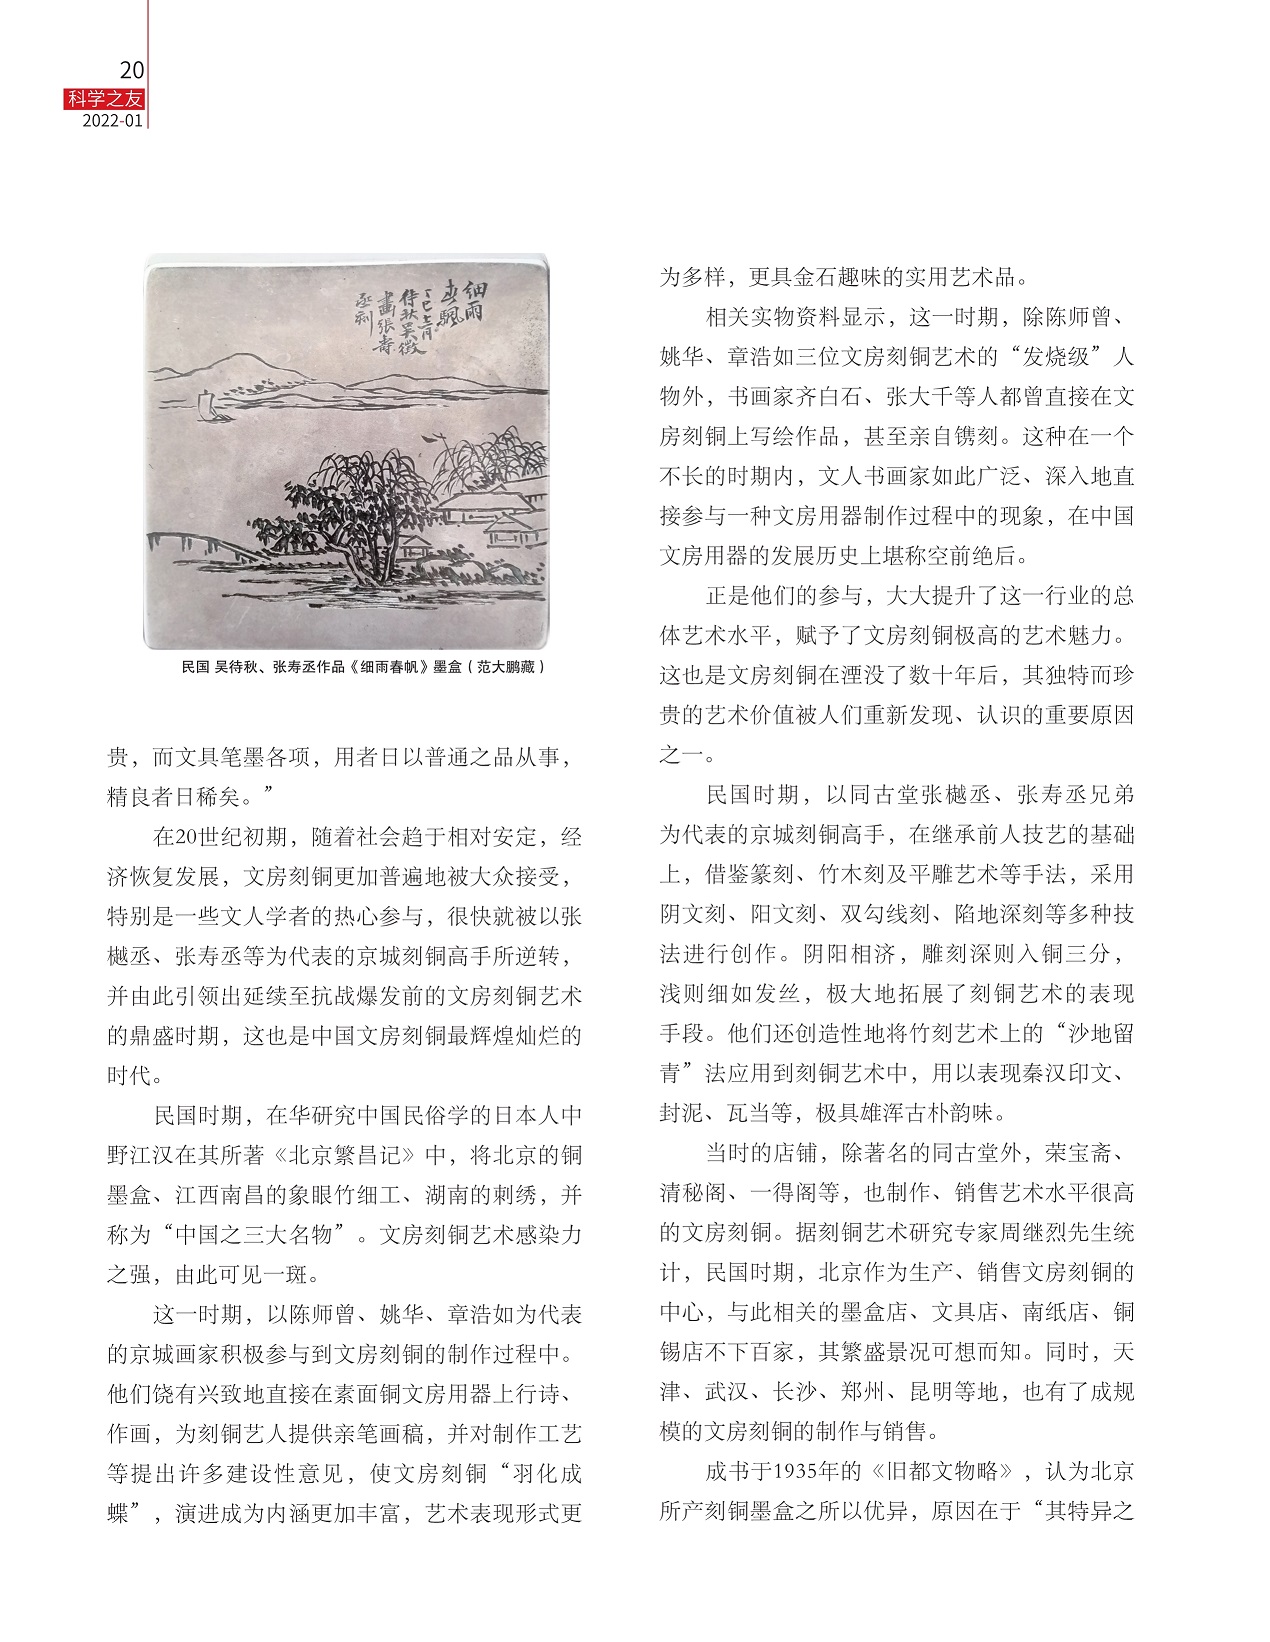 文房刻铜更加普遍地被大众接受,京城画家积极参与到文房刻铜的制作过程中